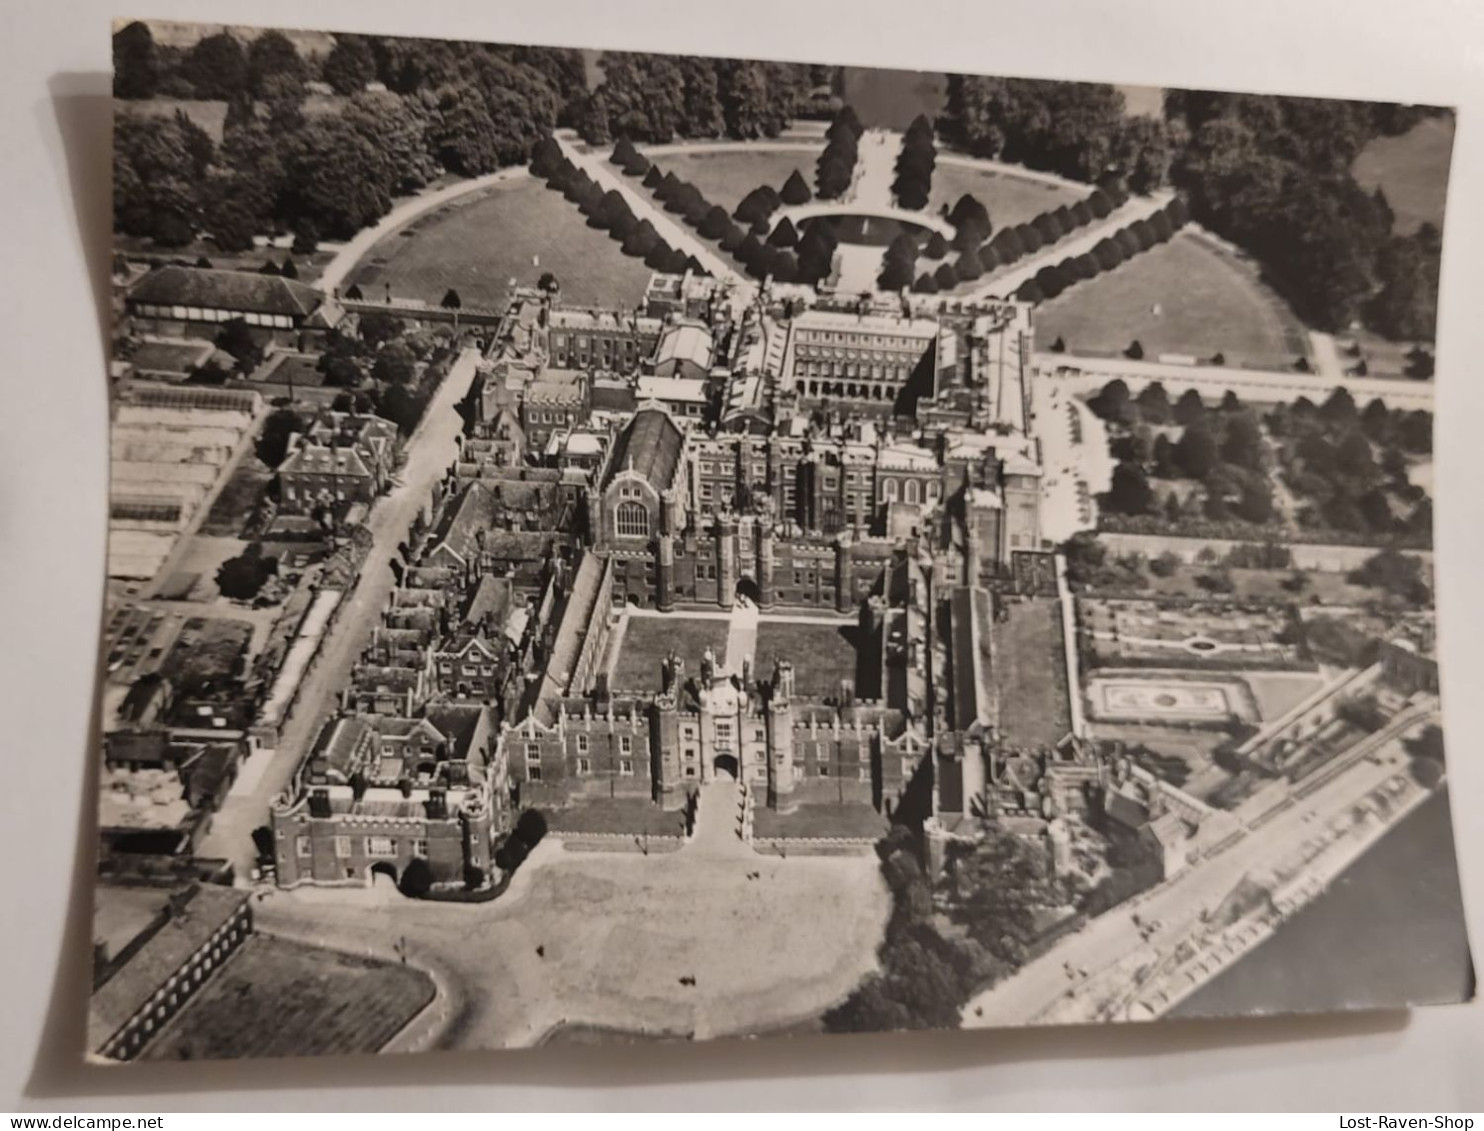 Hampton Court Palace - Hampton Court